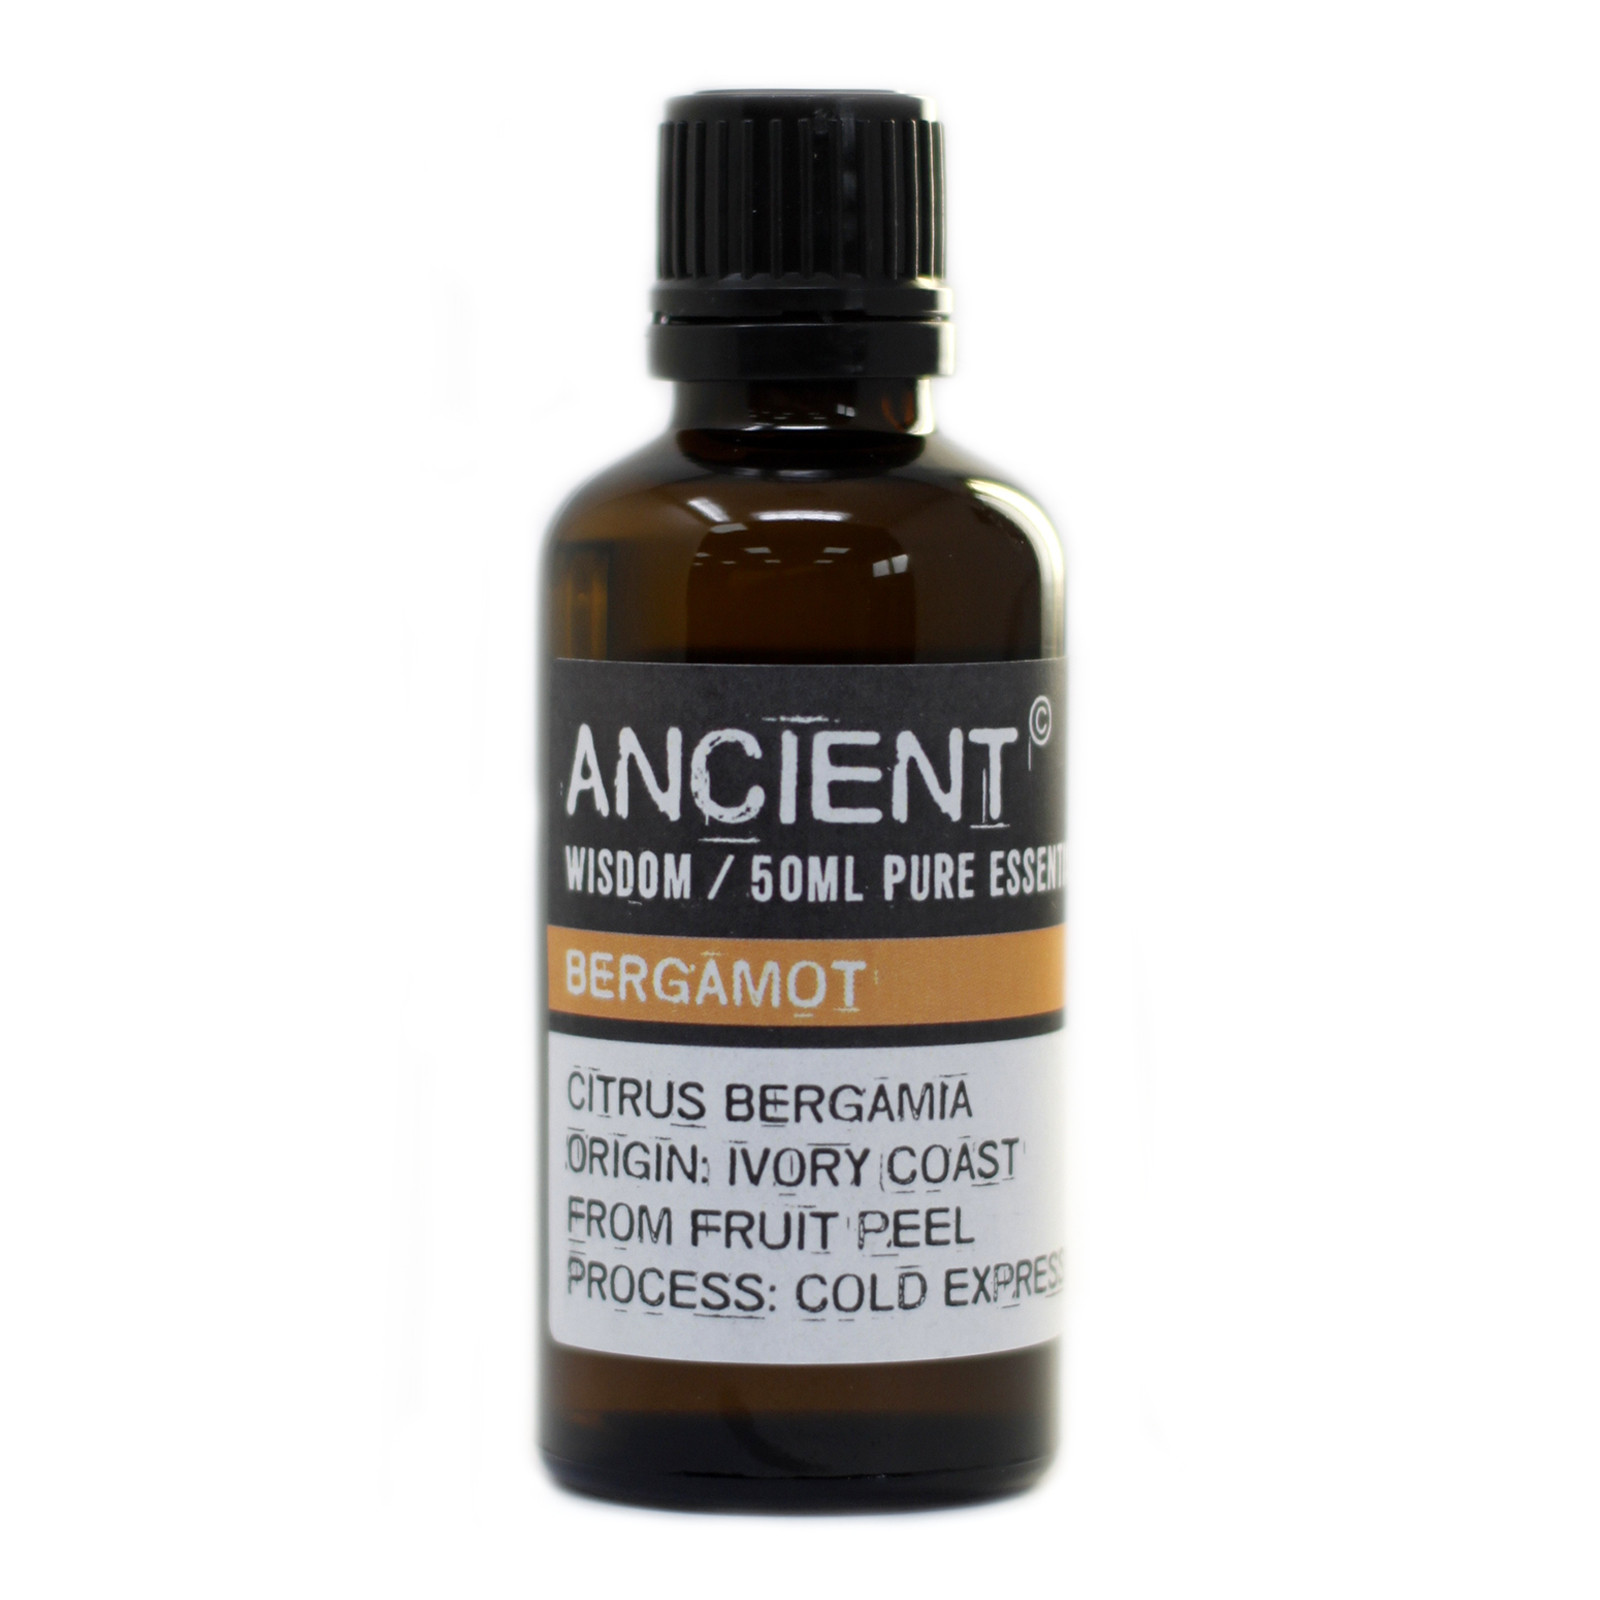 Bergamot Essential Oil 50ml